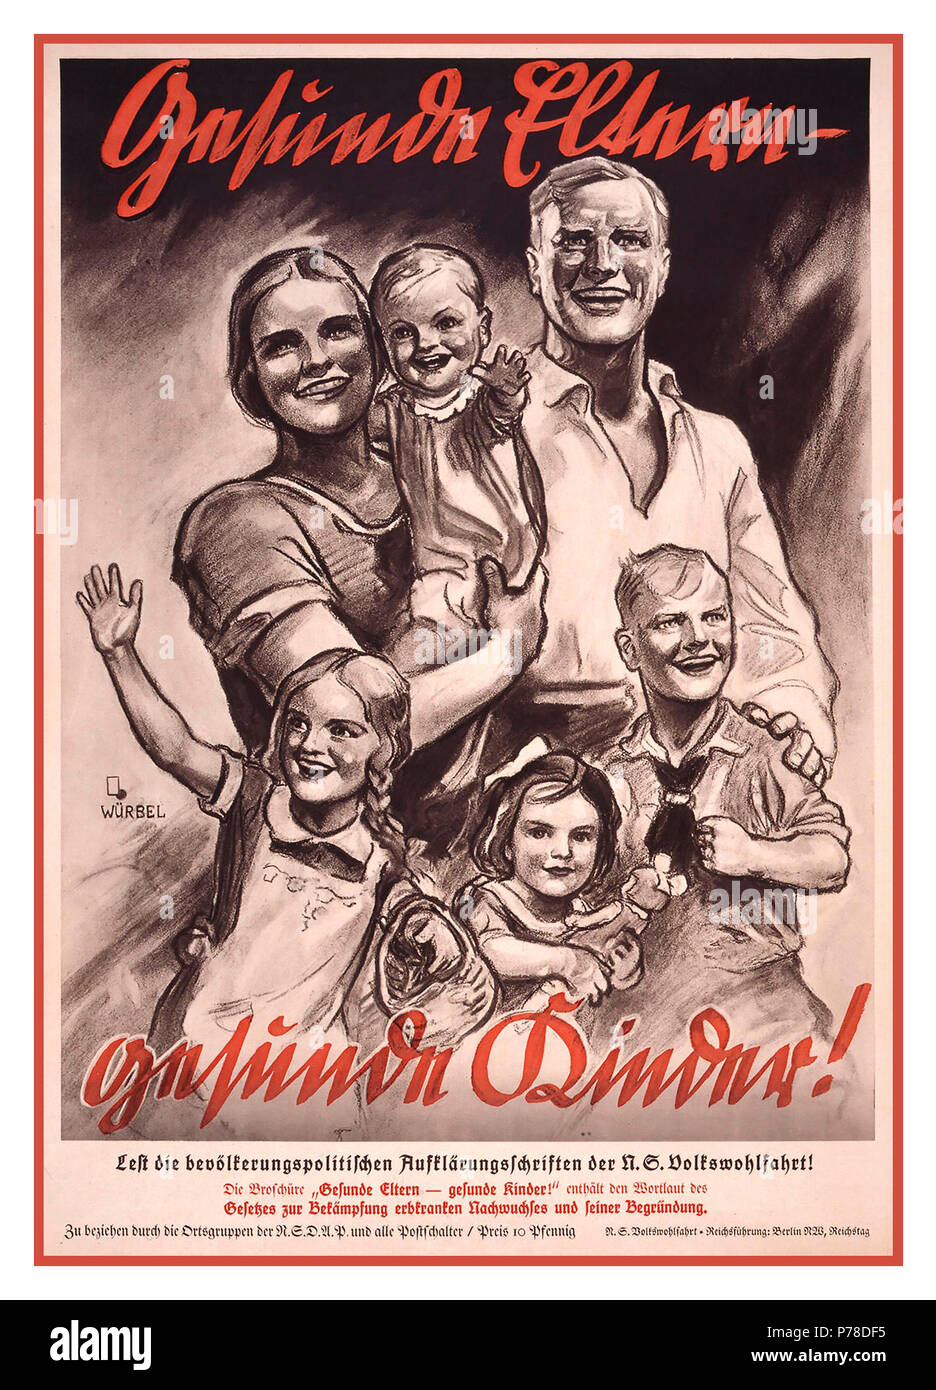 Vintage 1930 Affiches de propagande allemande "parents en santé - santé des enfants !" affiche publicitaire pour la politique en matière de population 'illumination' de la NS-Volkswohlfahrt Berlin Allemagne 1934 Banque D'Images